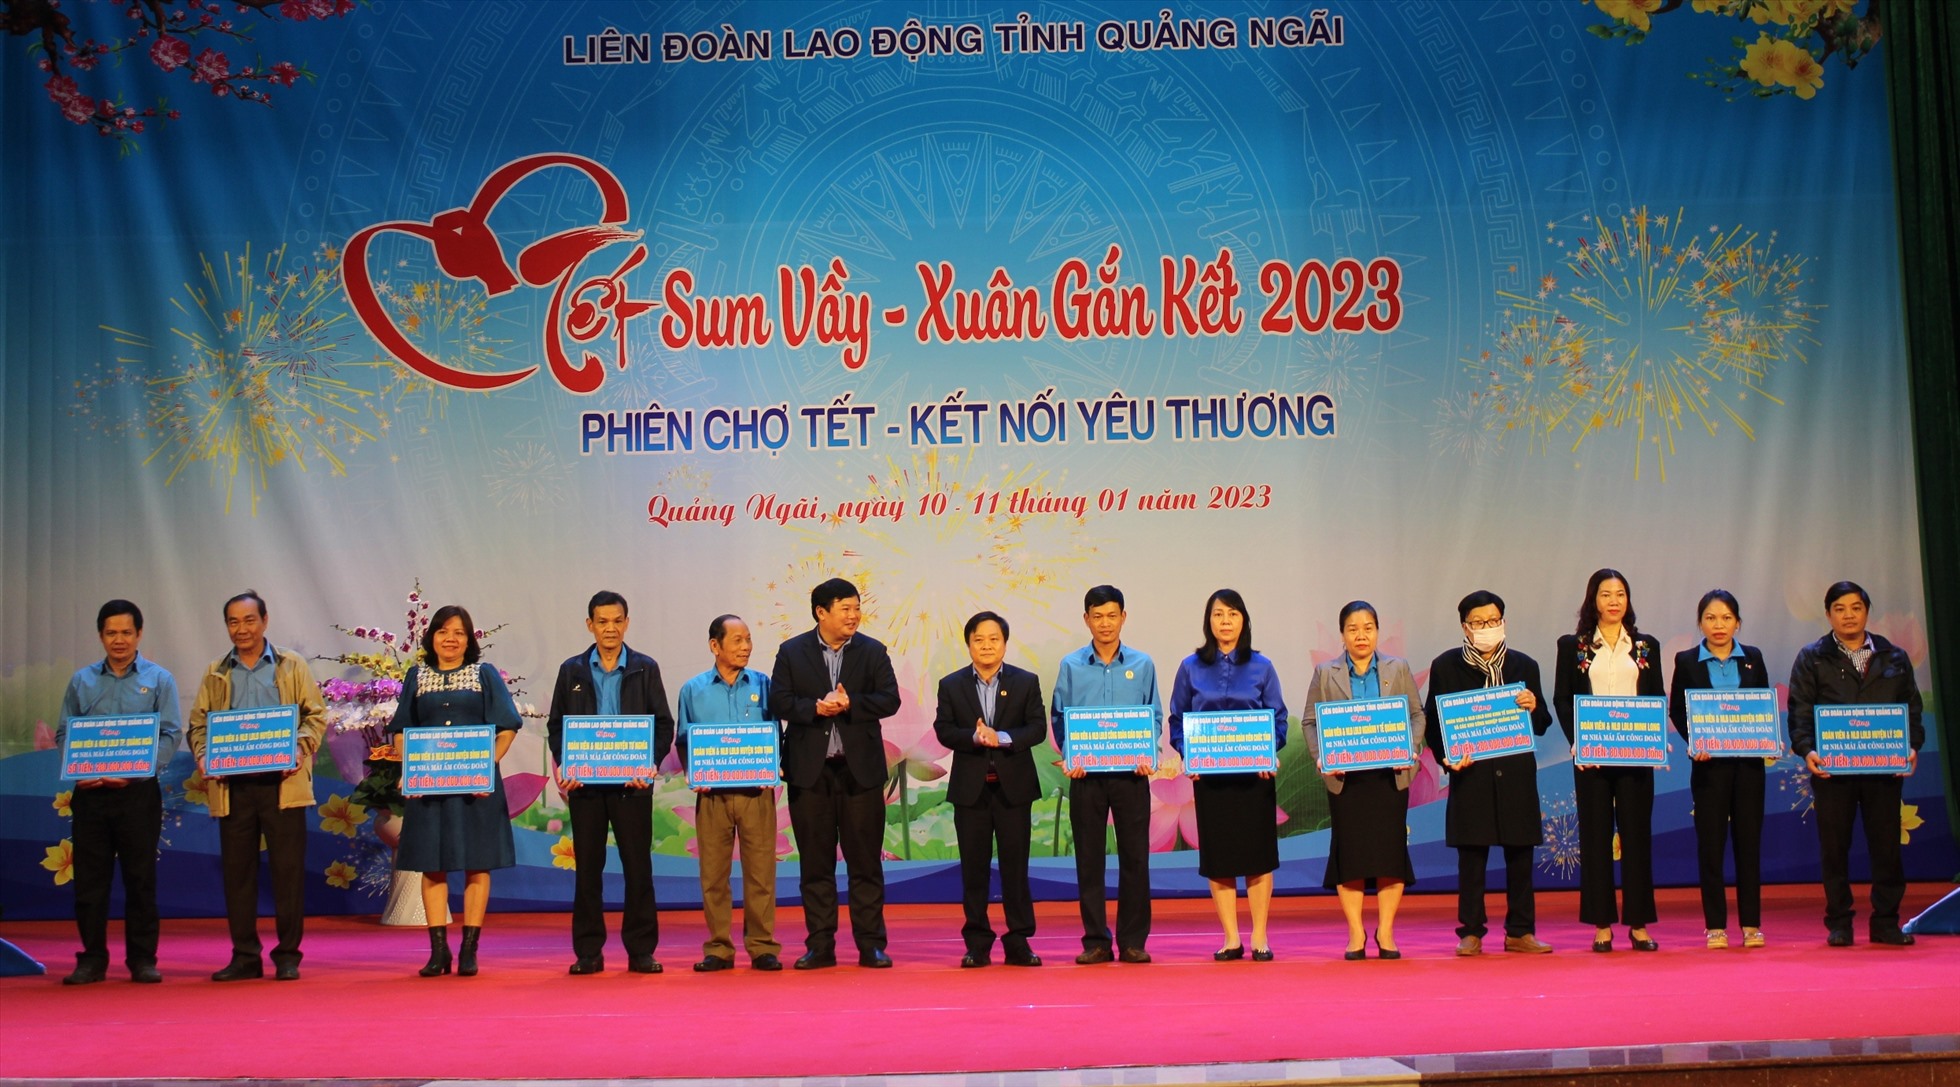 Tại Chương trình Tết Sum vầy - Xuân gắn kết 2023 do LĐLĐ tỉnh Quảng Ngãi tổ chức vào ngày 10.1, các doanh nghiệp đã hỗ trợ kinh phí chăm lo, cải thiện đời sống người lao động. Ảnh: Ngọc Viên